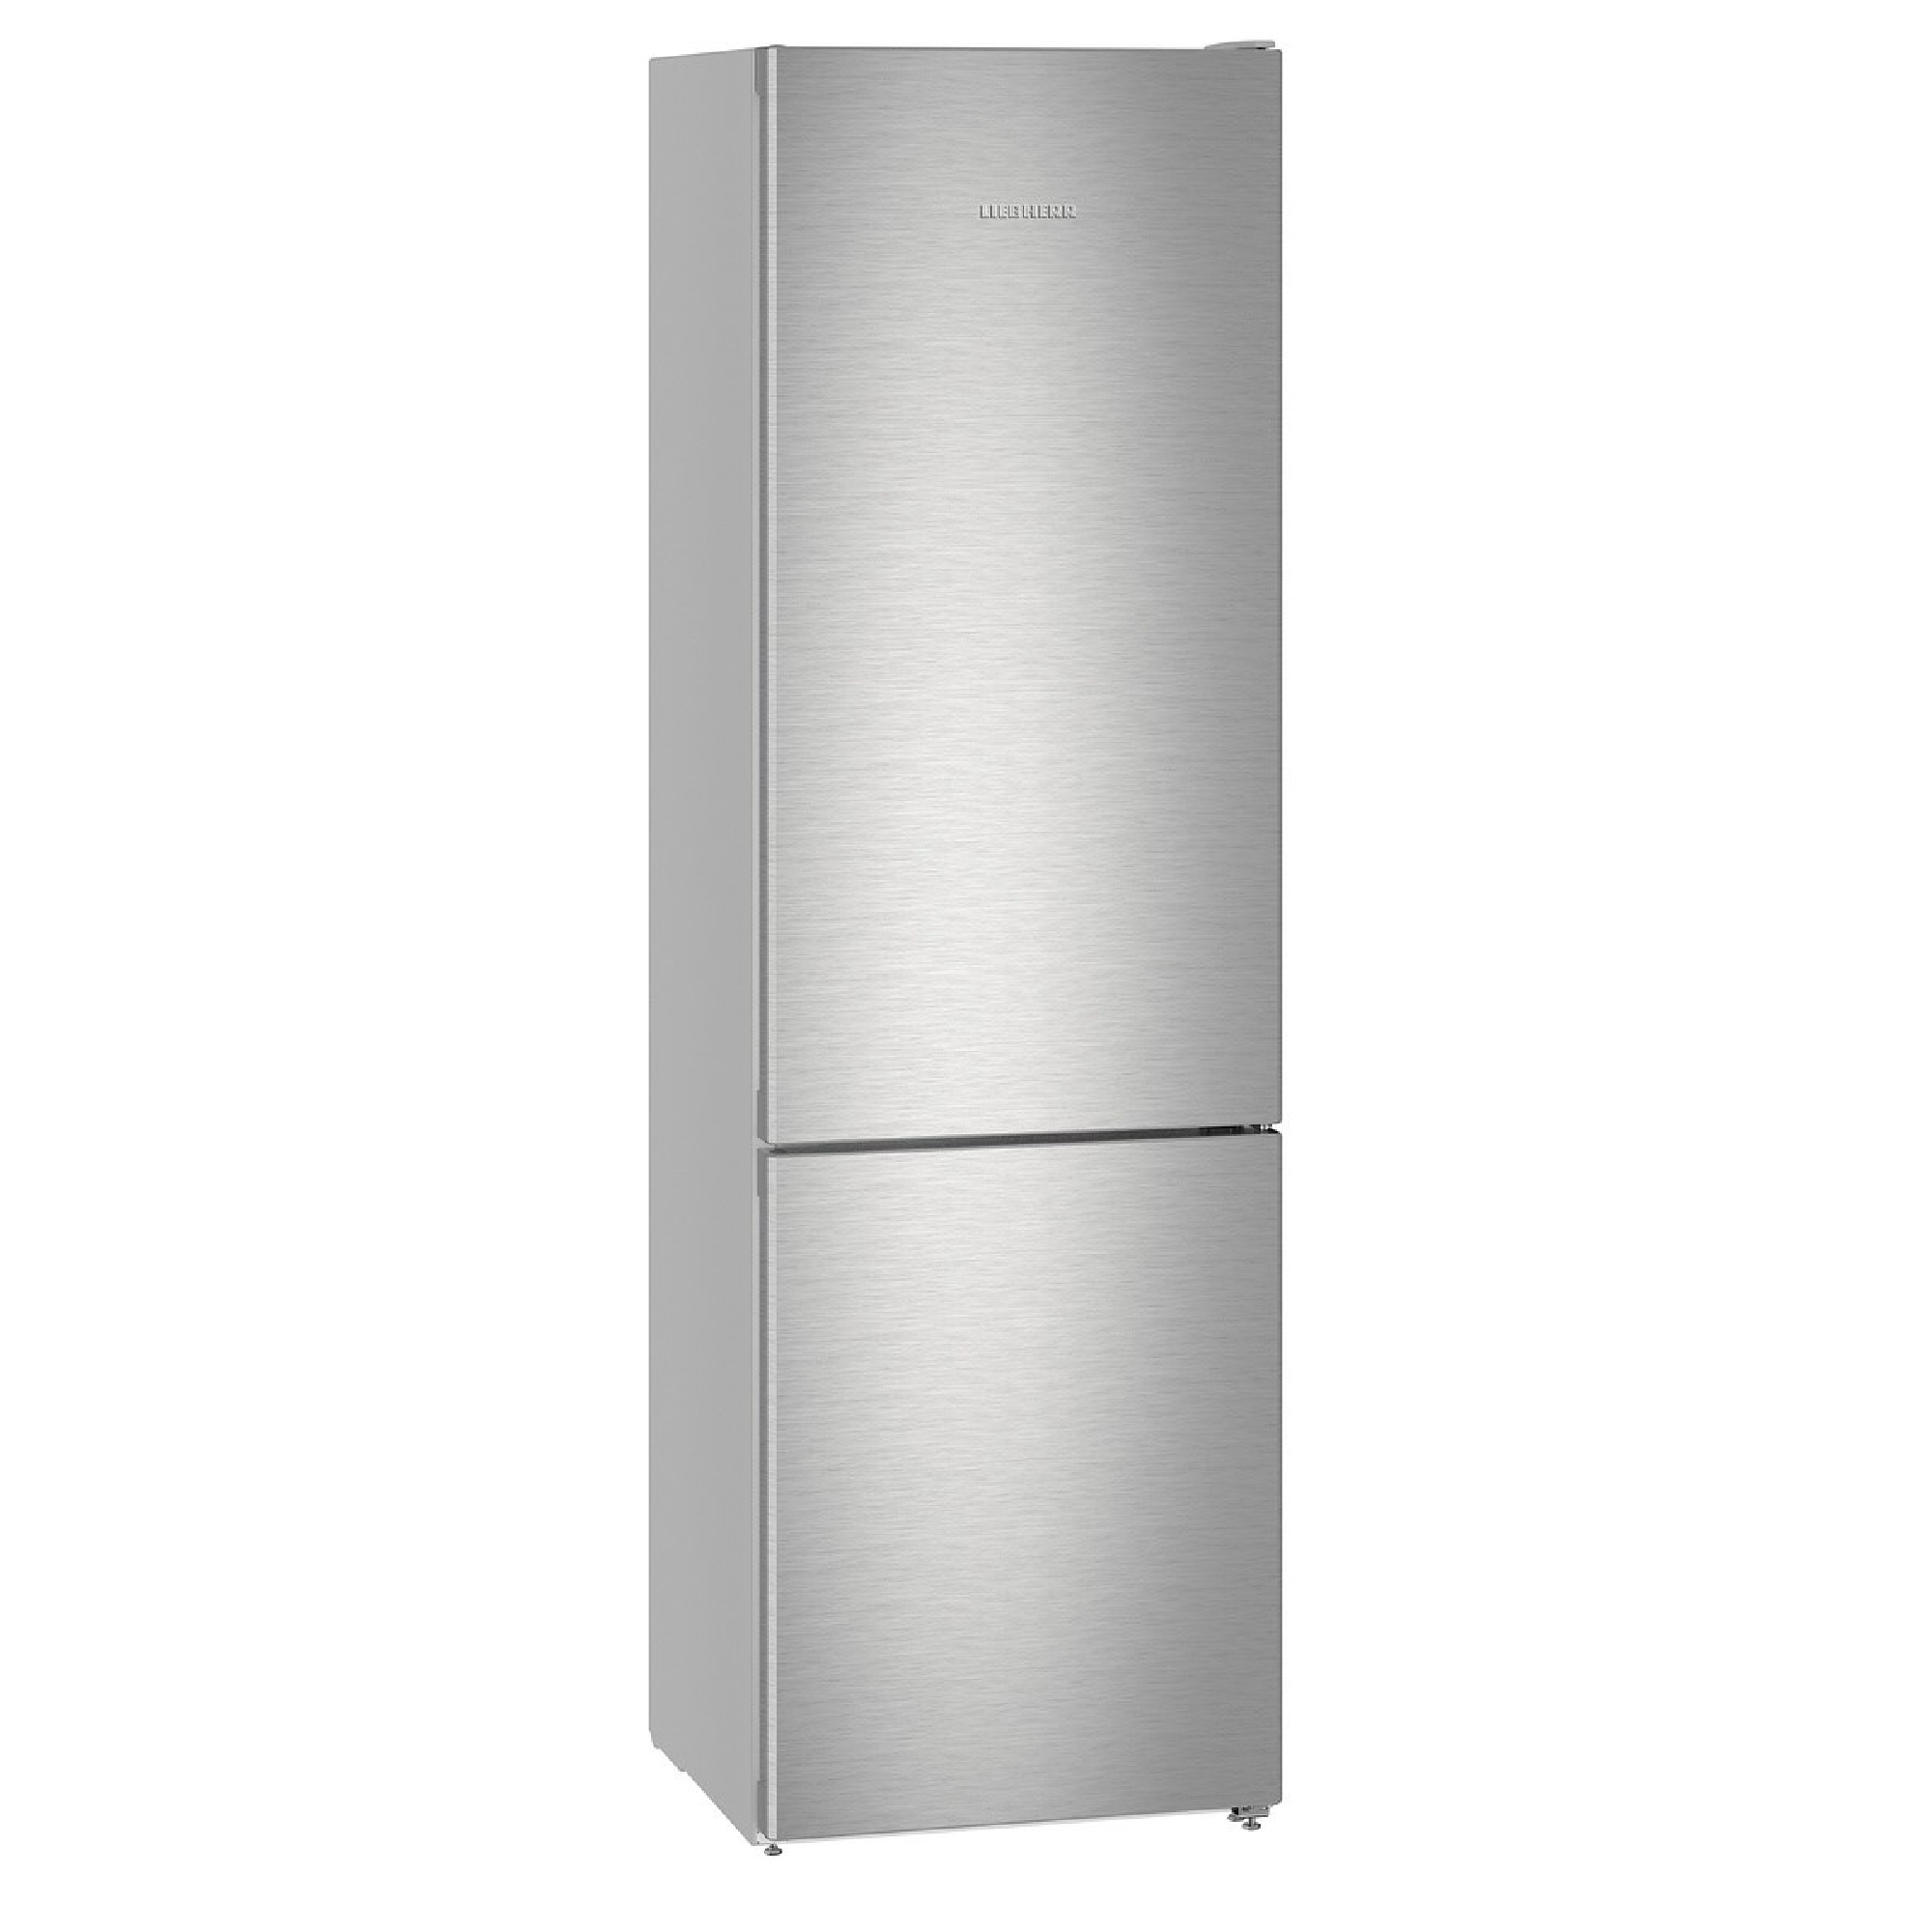 Хорошие недорогие холодильники ноу фрост. Холодильник Liebherr CNEF 4825. Холодильник Liebherr CUSL 2915. Холодильник Liebherr cbnef5735. Холодильник ATLANT хм 4423-080 n.